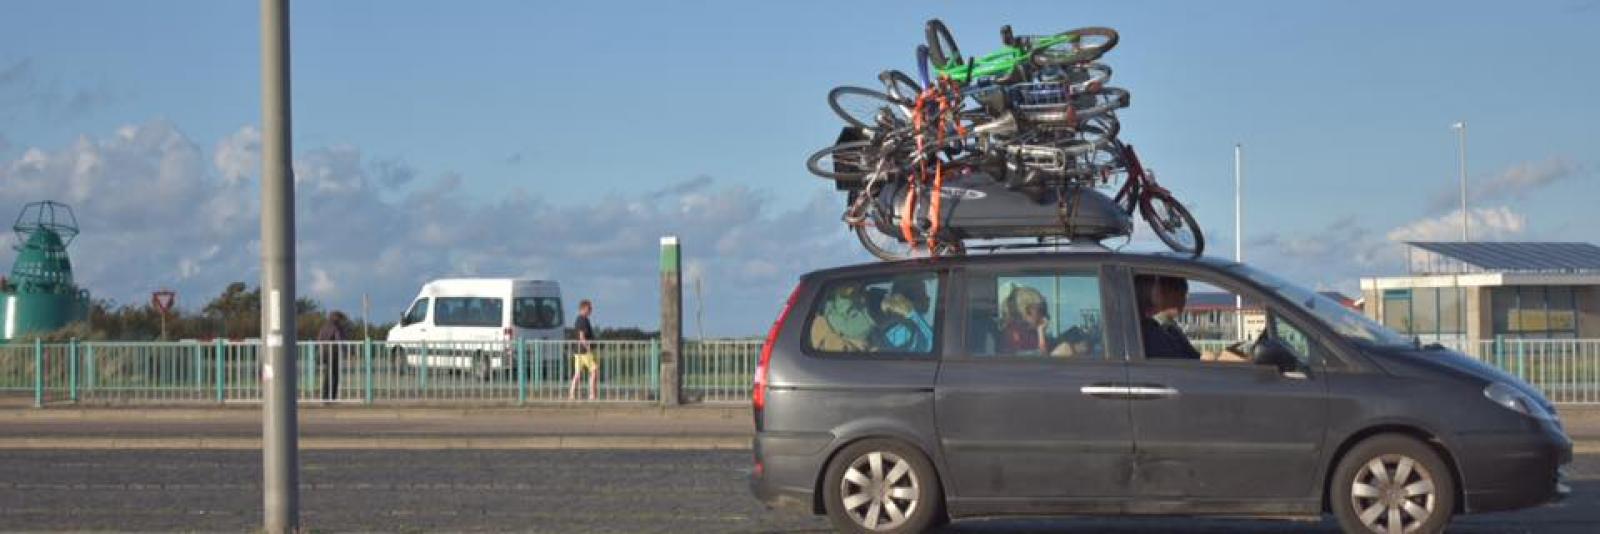 Gezin neemt zeven fietsen op creatieve mee naar Texel - NH Nieuws